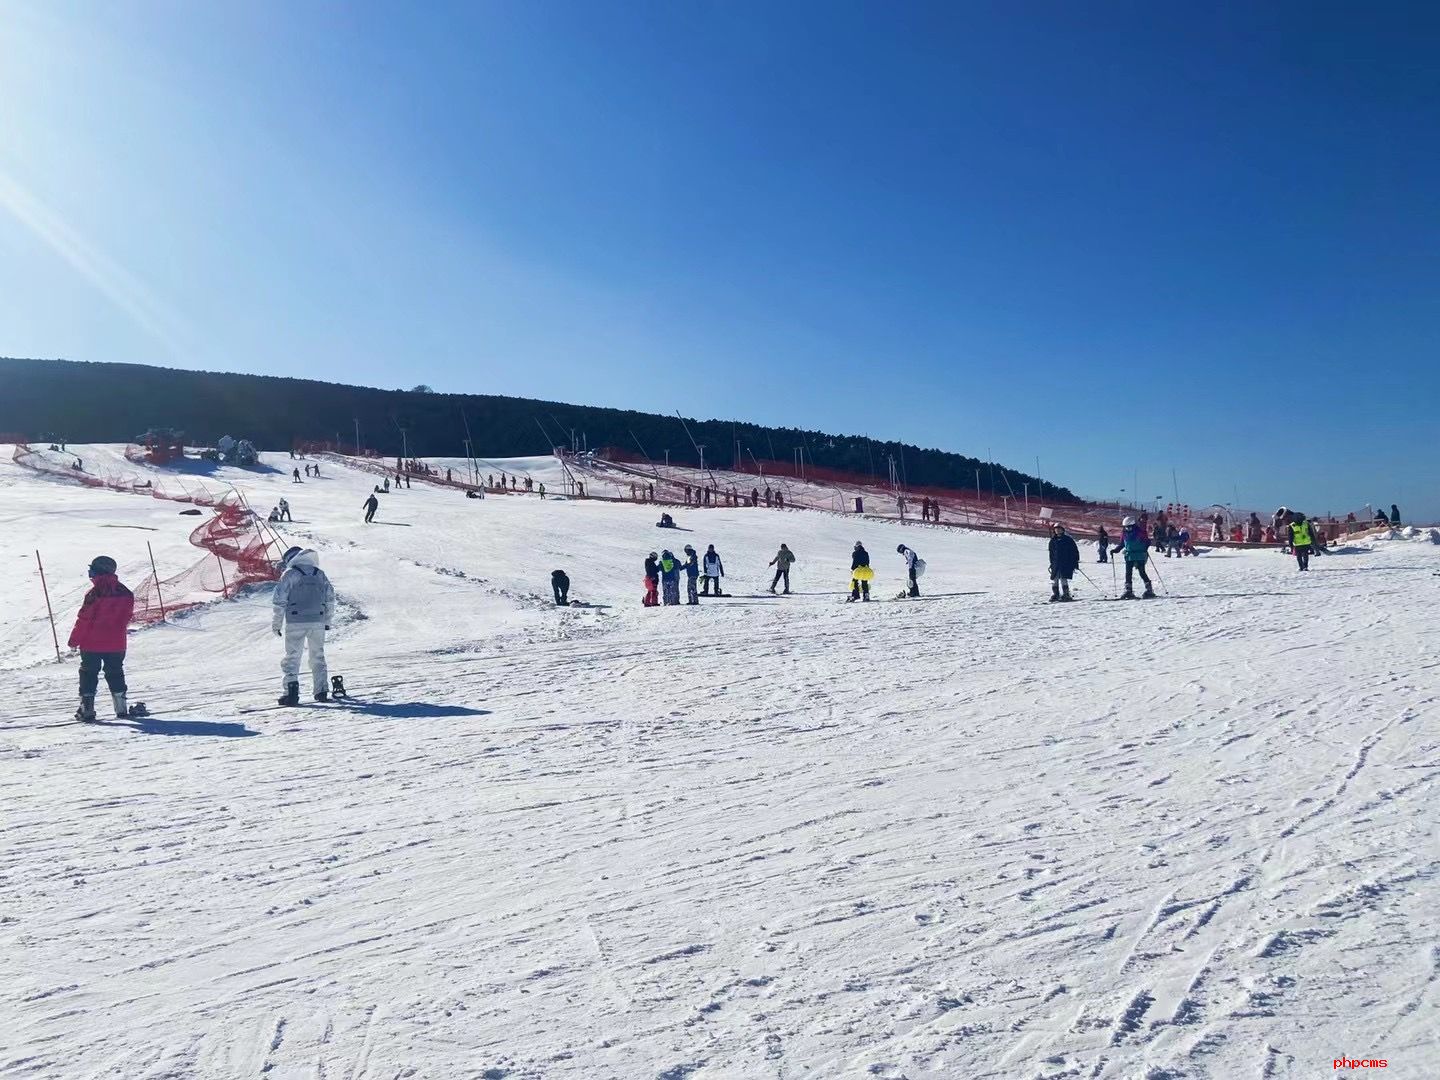 国家高山滑雪中心预计按时完成所有赛道准备工作